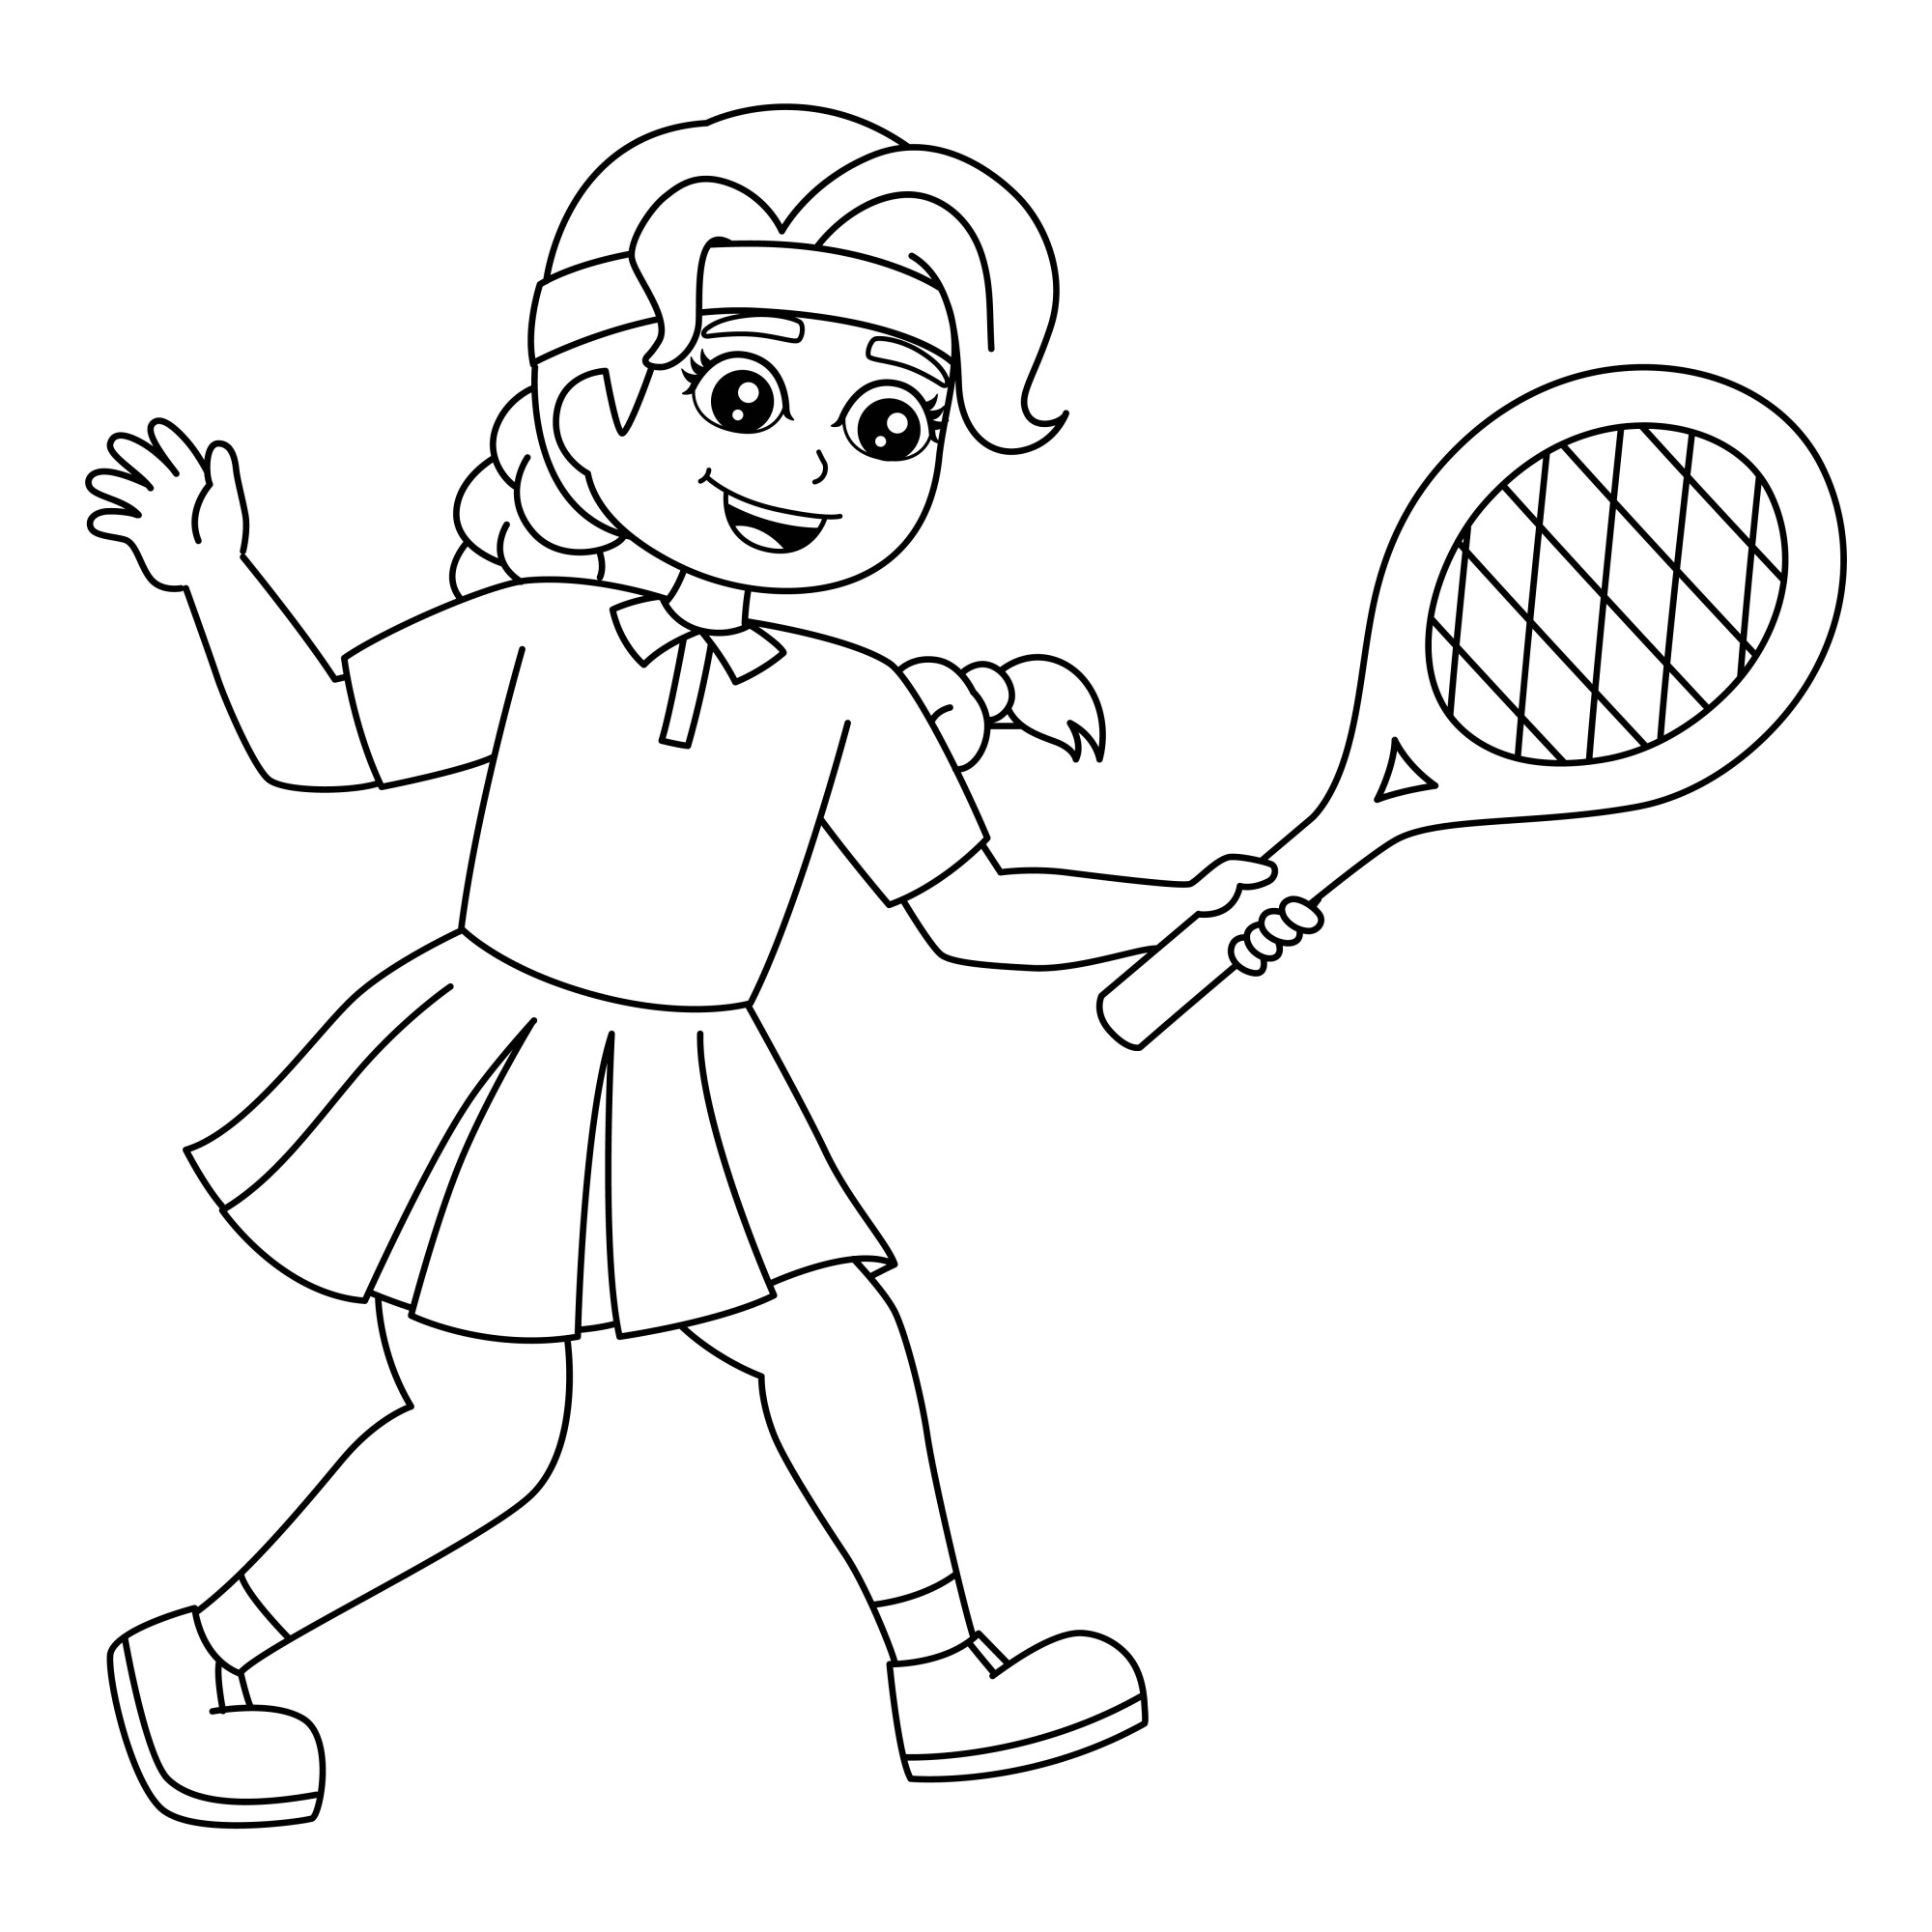 Раскраска для детей: девочка с ракеткой играет в бадминтон